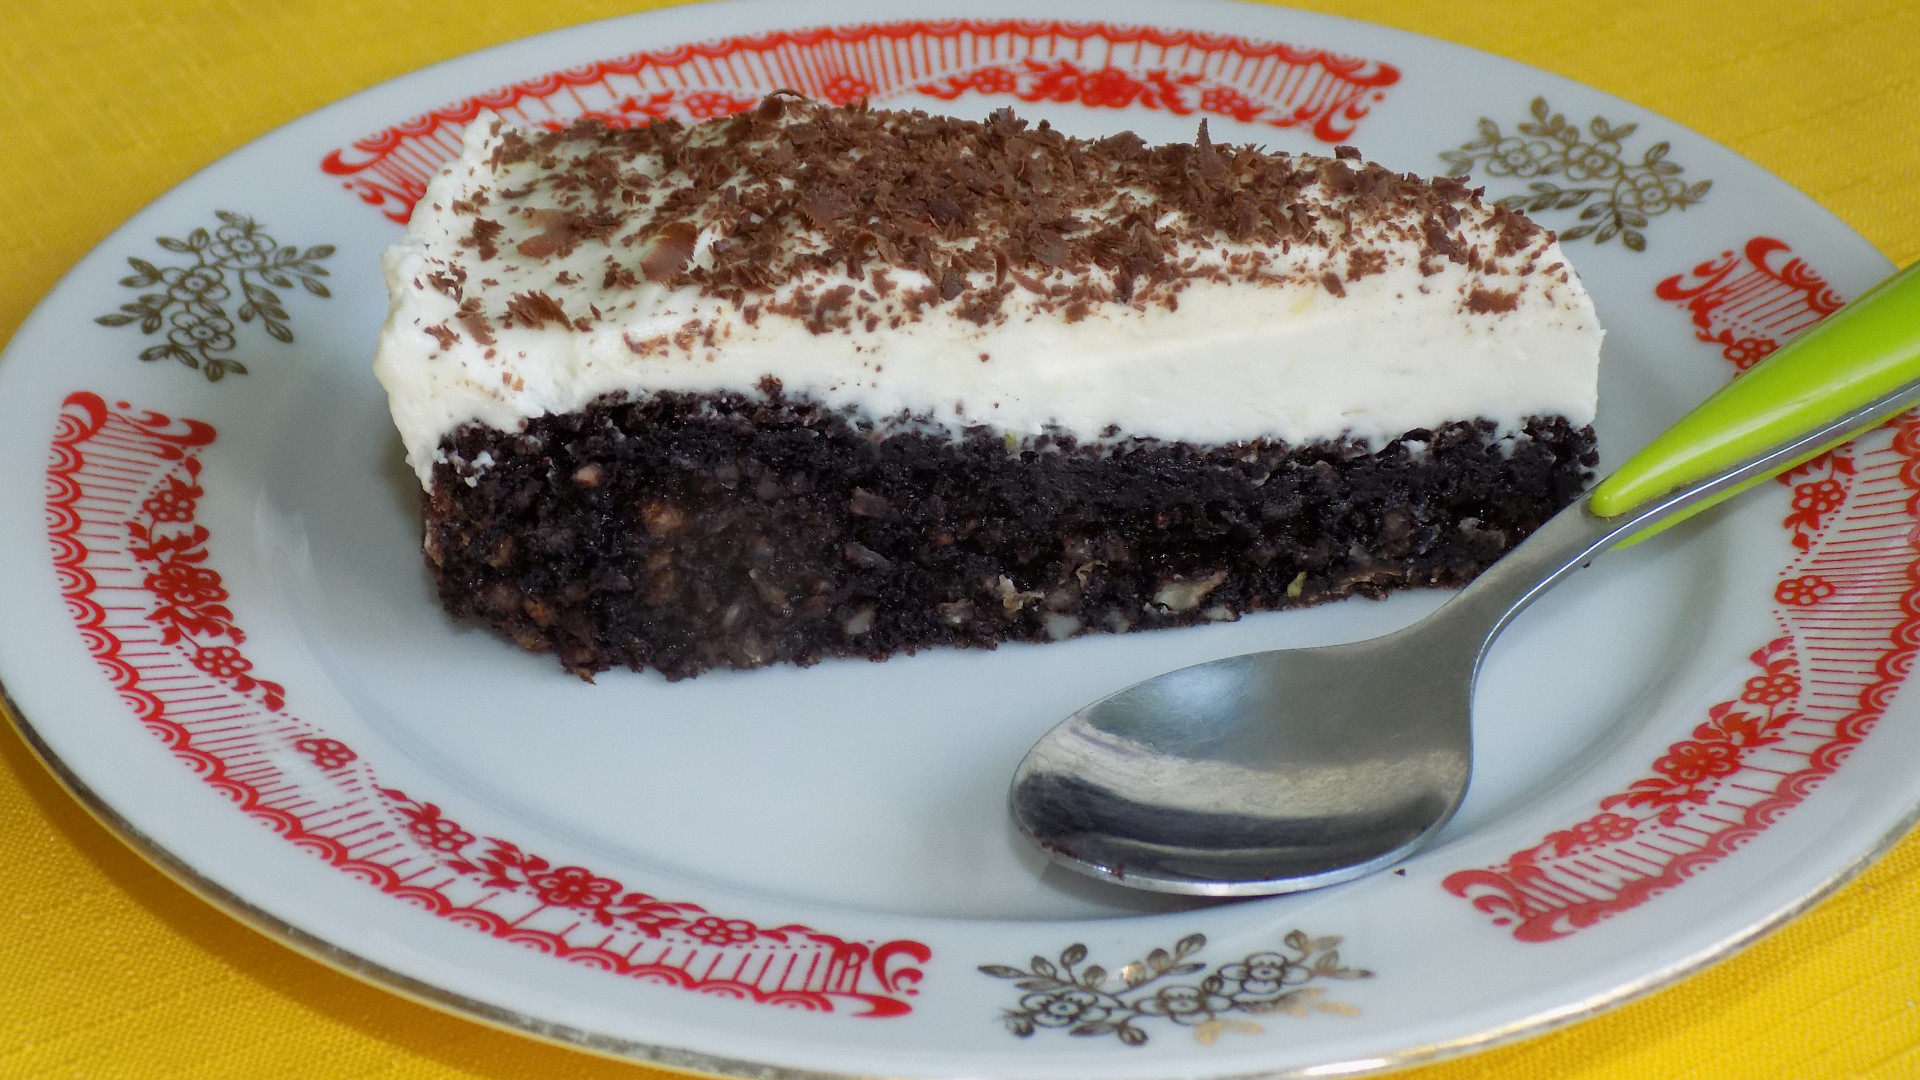 Čokoládový koláč s mascarpone bez mouky